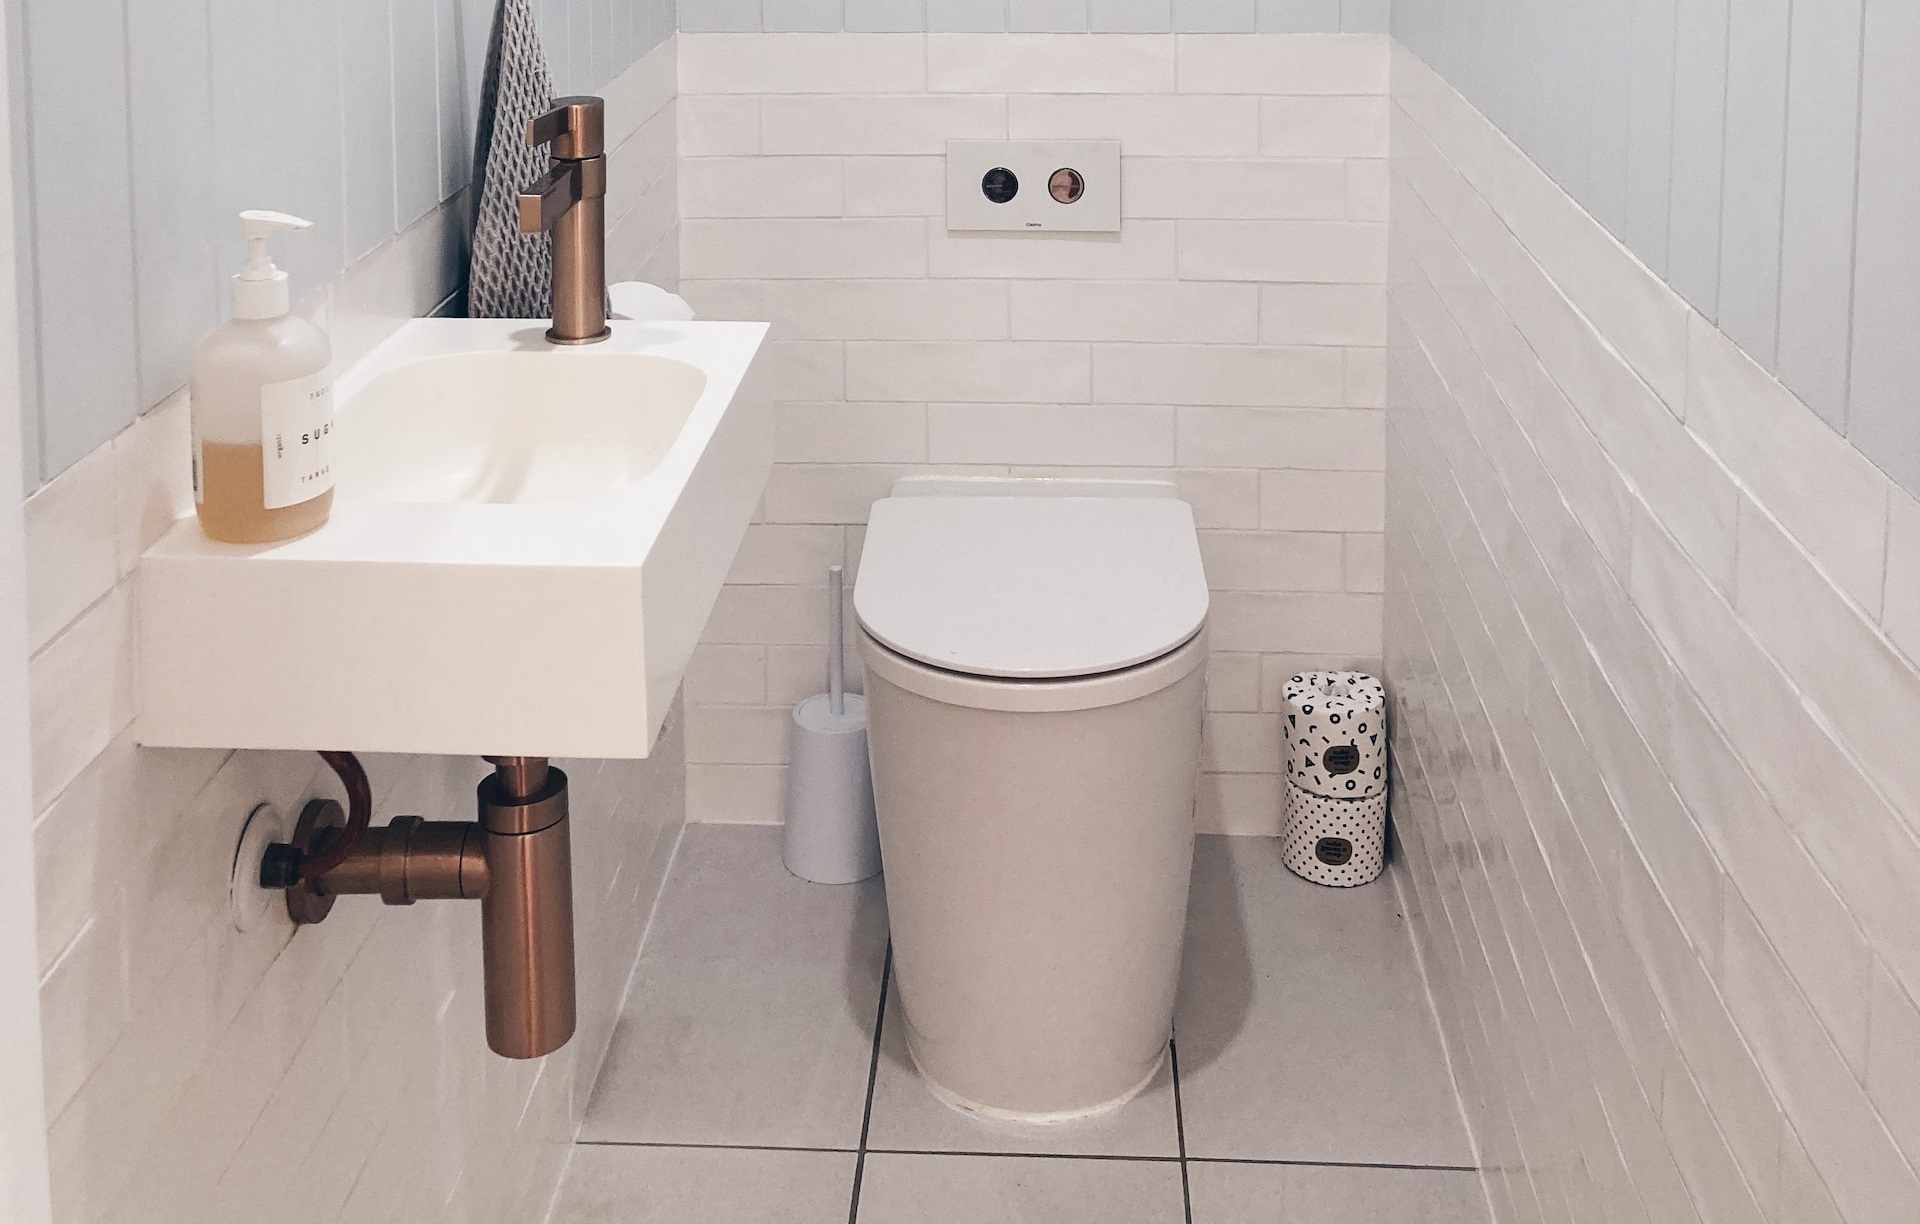 Les toilettes japonaises innovation et hygiène pour votre salle de bain